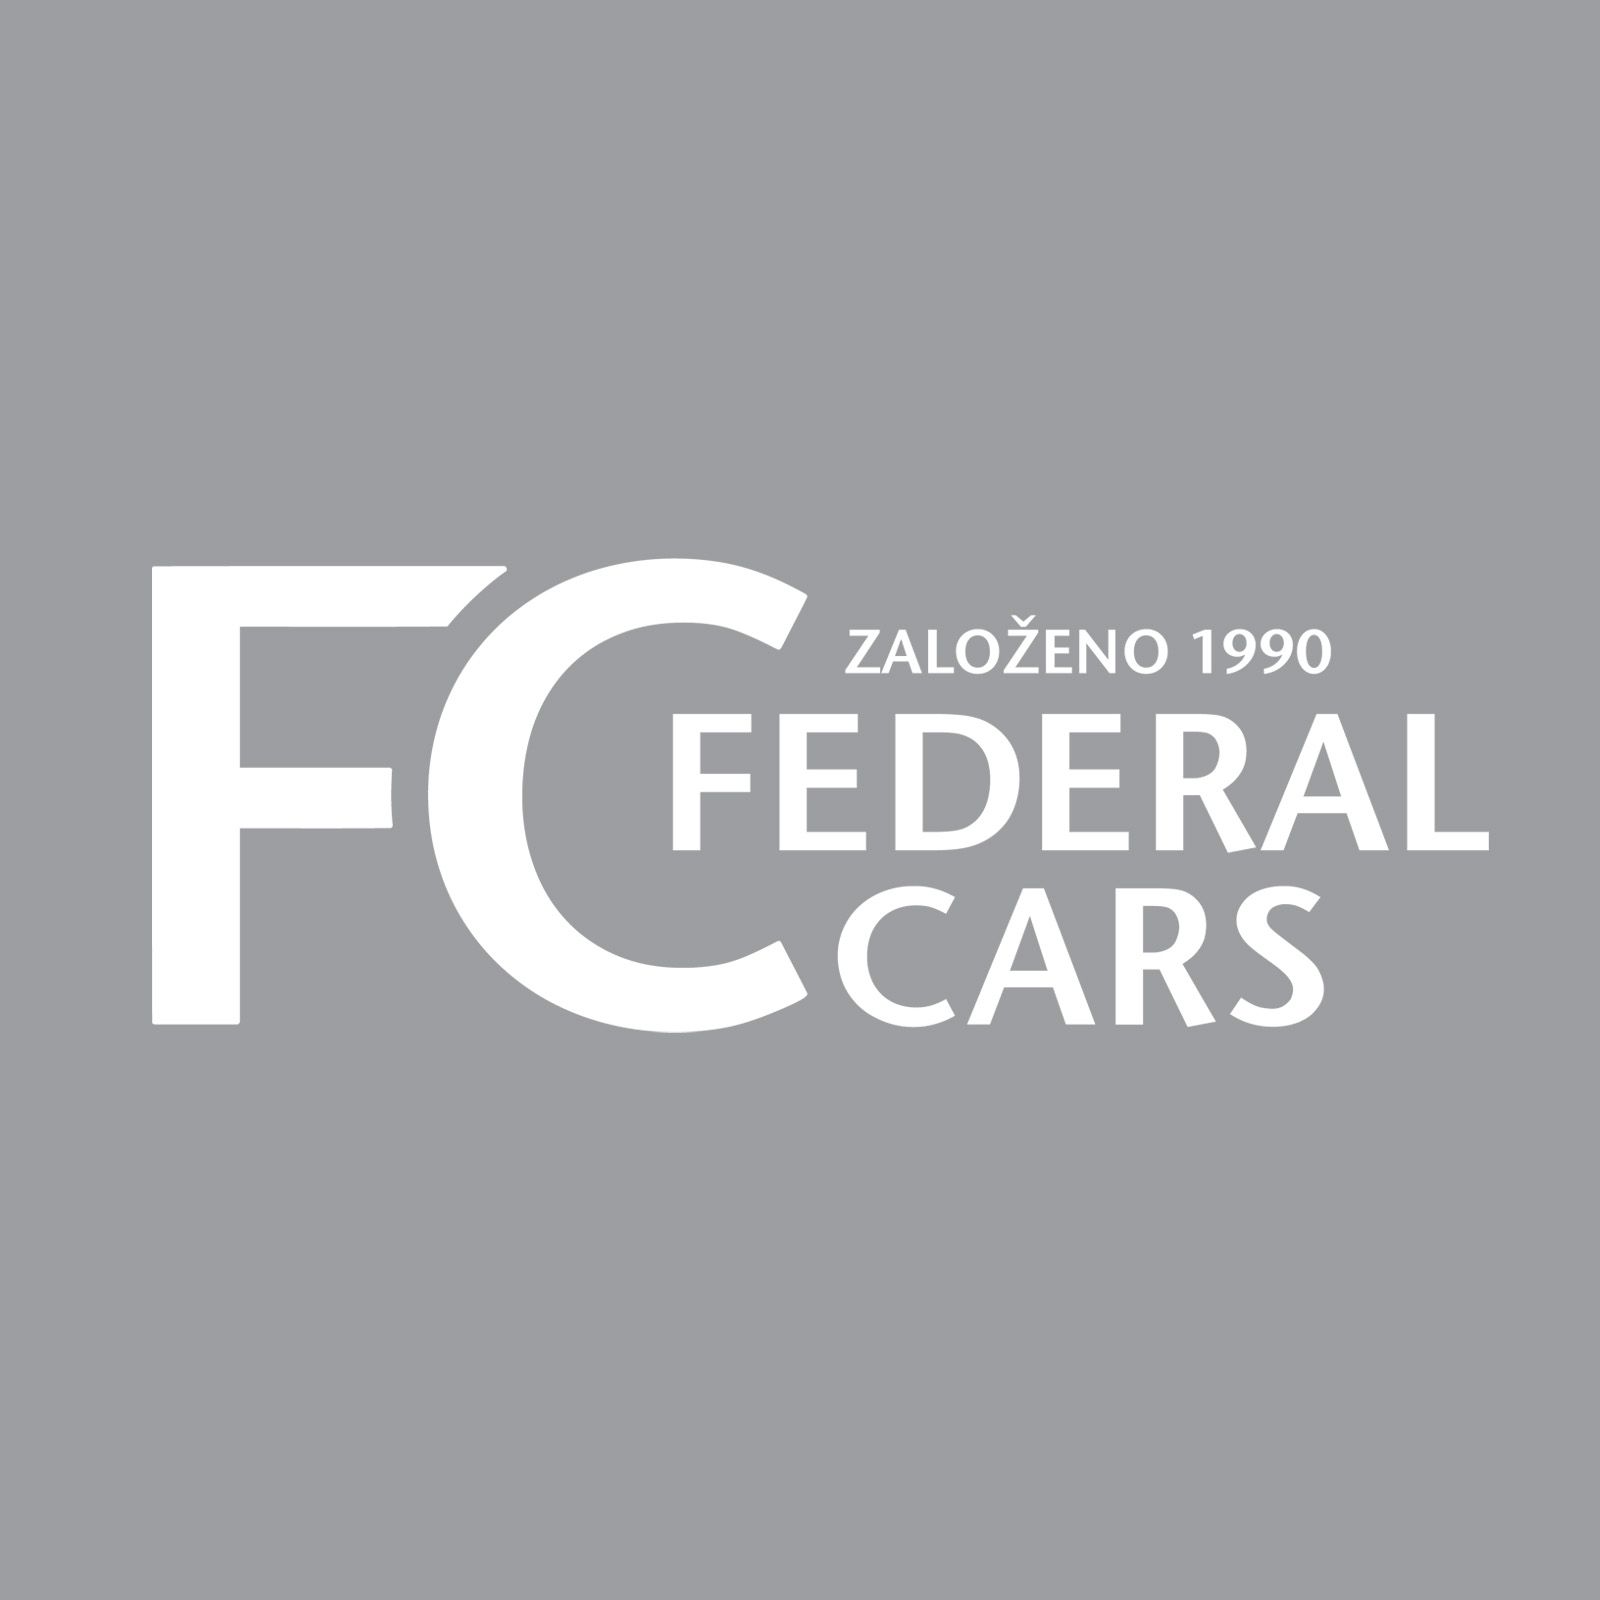 Vůně Car Scents pro Federal Cars